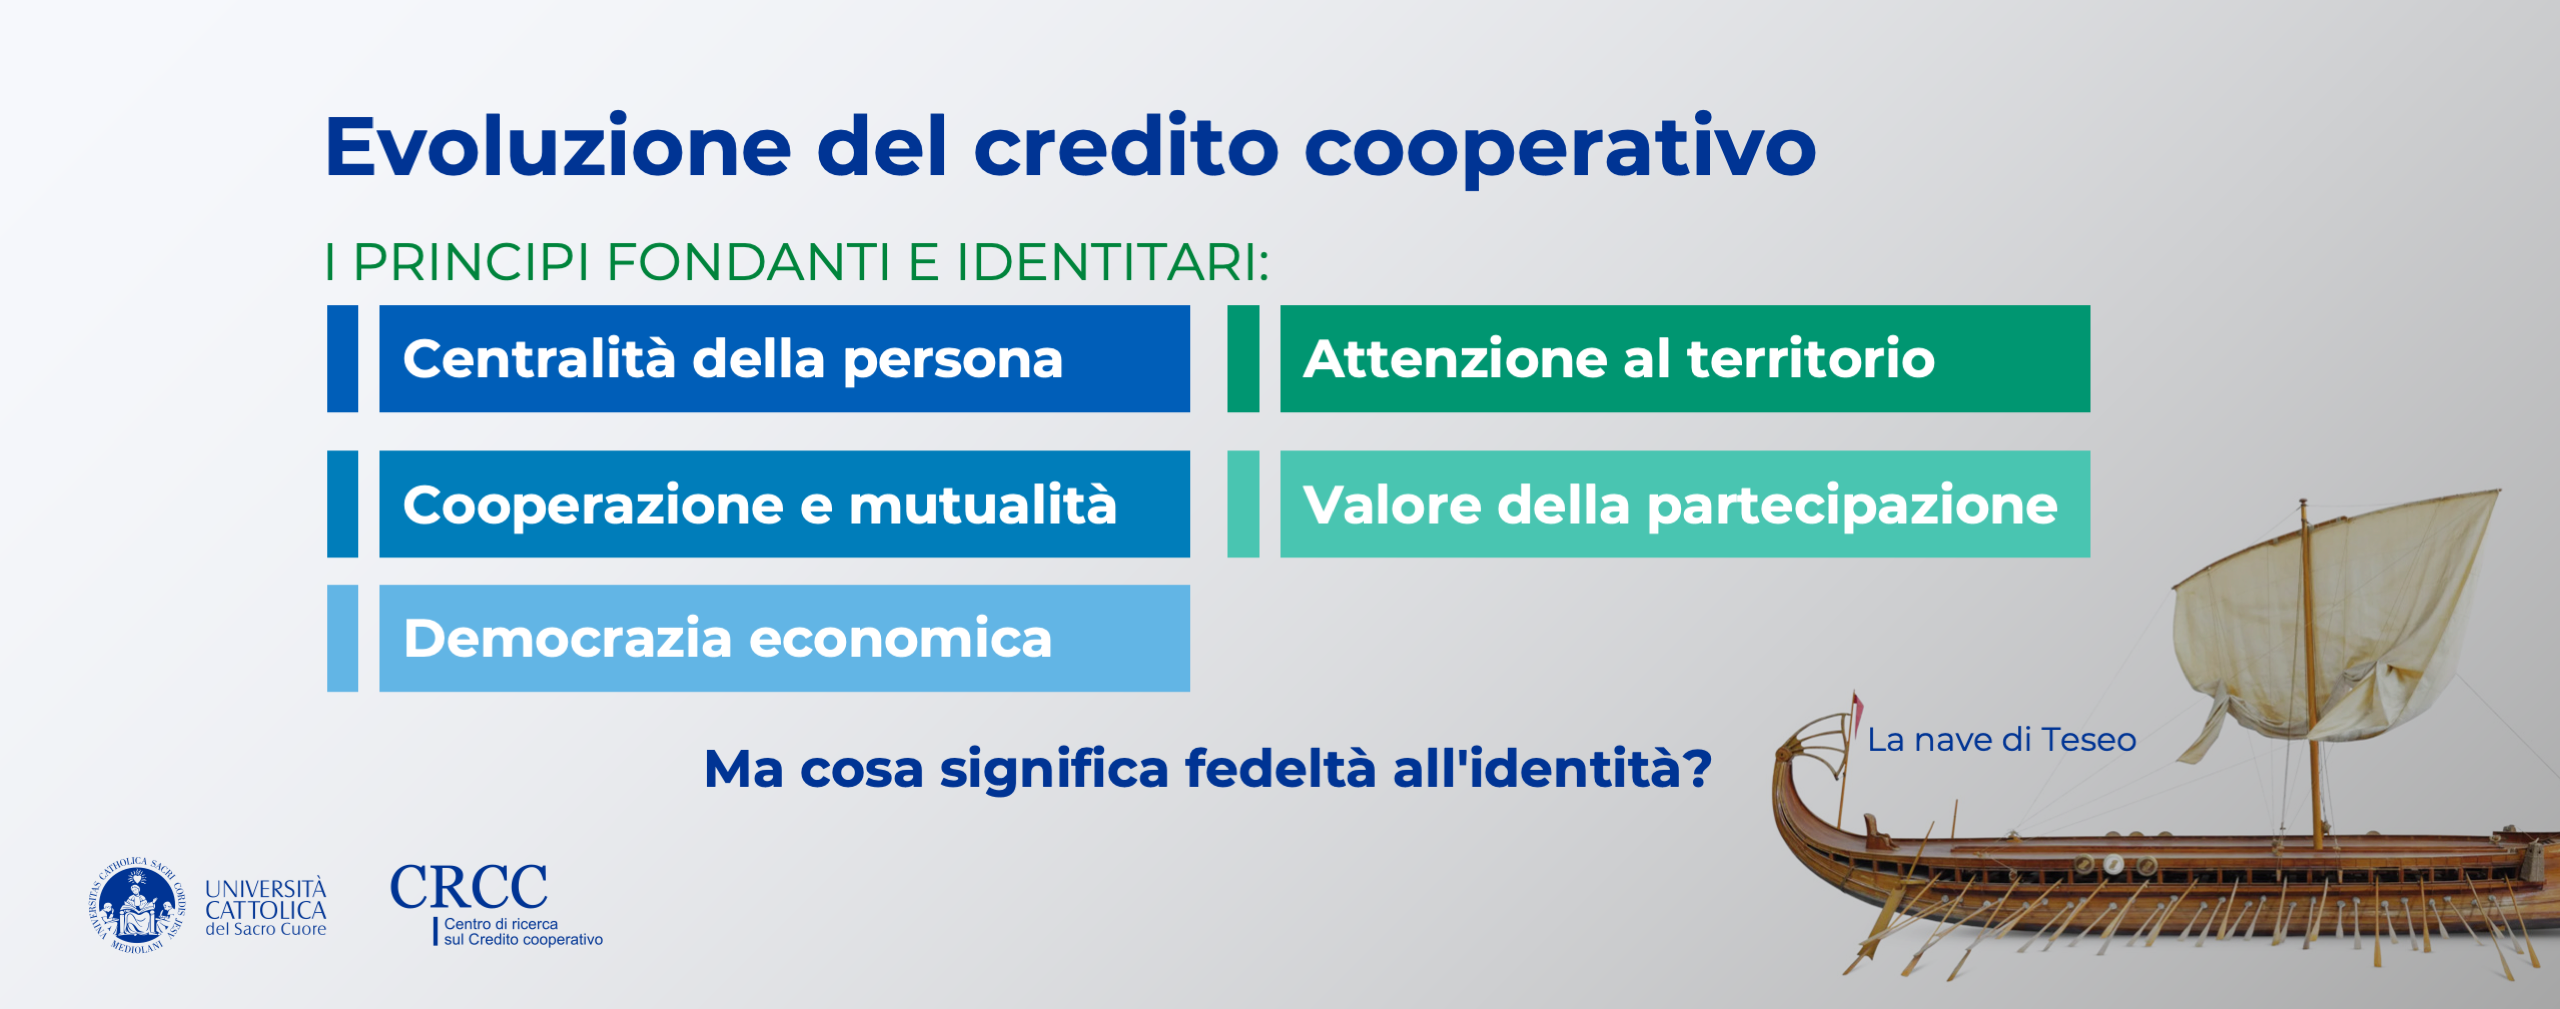 Evoluzione del credito cooperativo